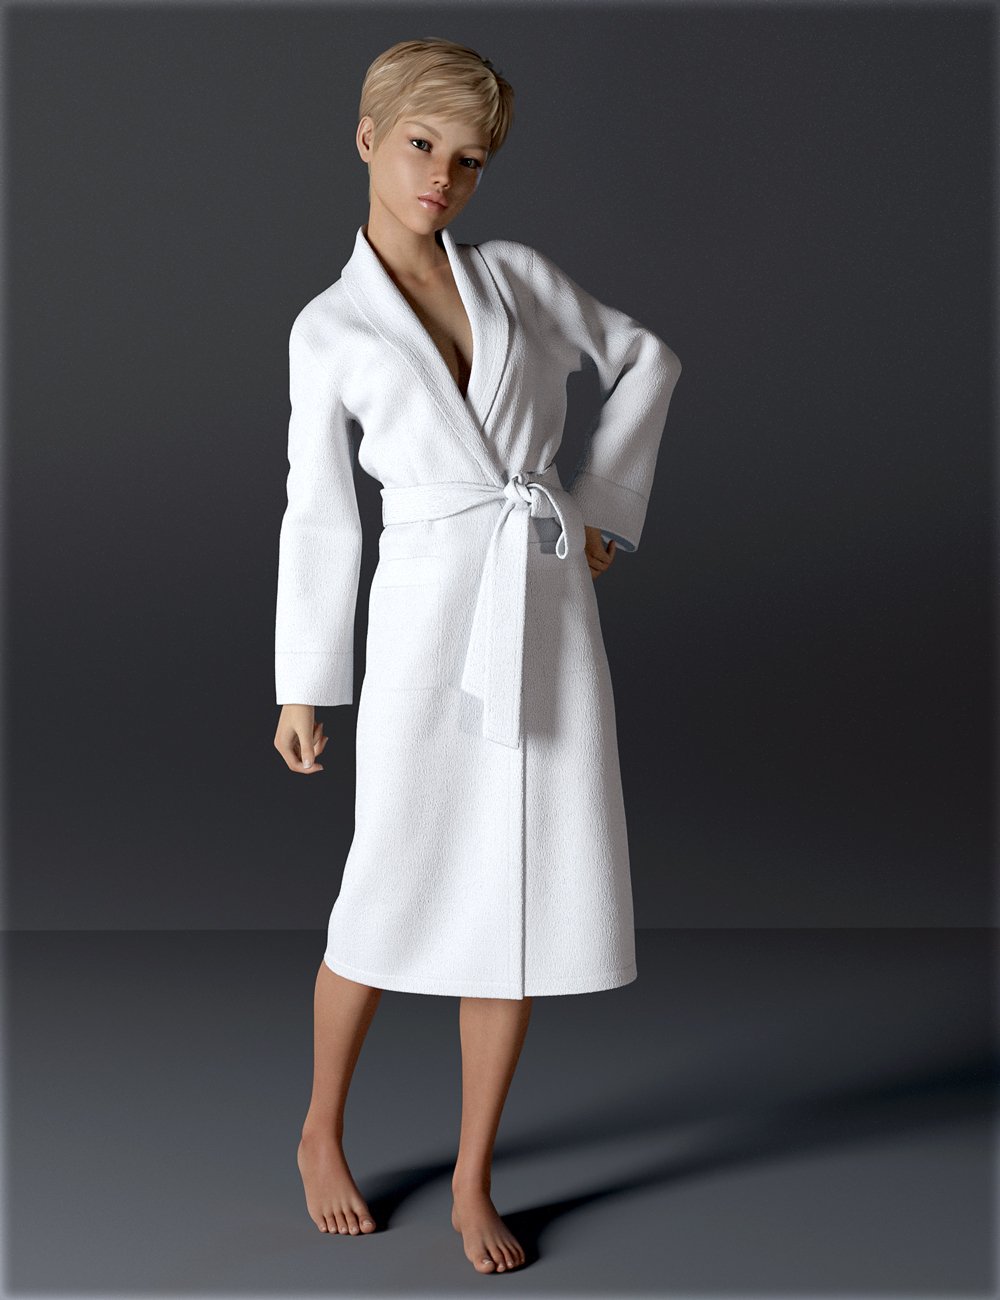 dForce H&C Bathrobe for Genesis 8 Female(s) by: IH Kang, 3D Models by Daz 3D